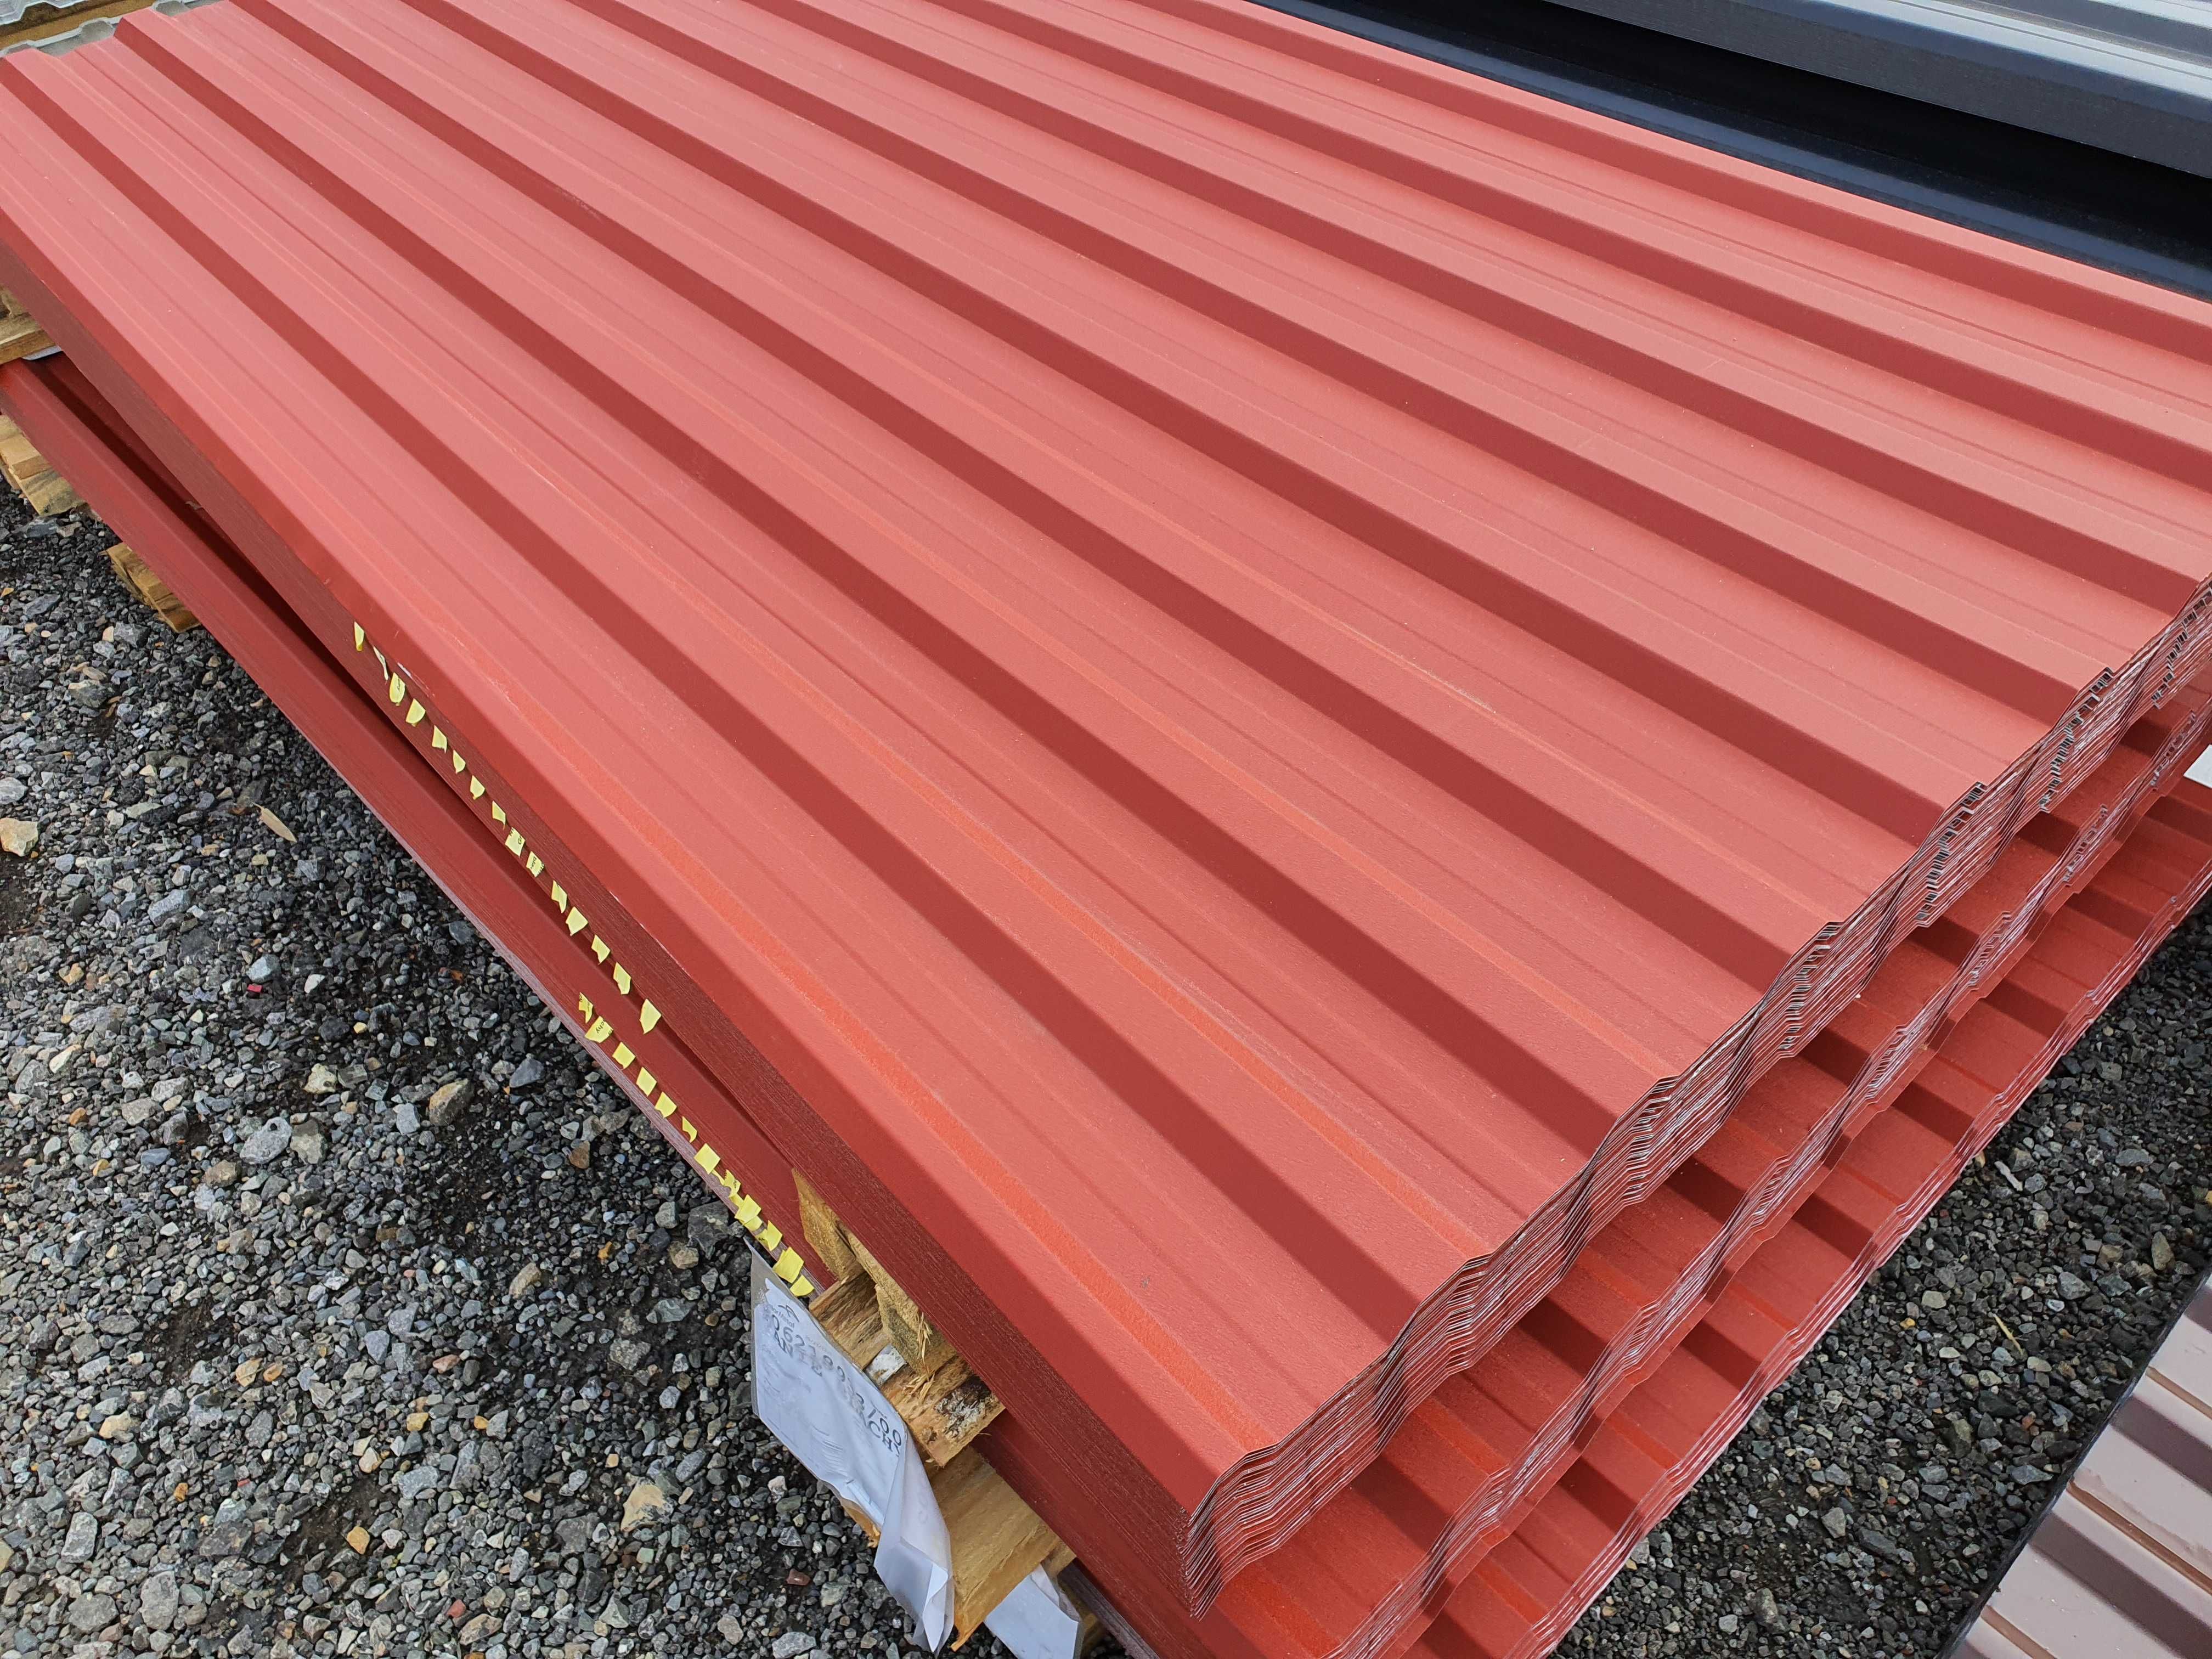 Blacha dachowa T18 czerwona, nowa, garaż, wiata, dom 0,5mm